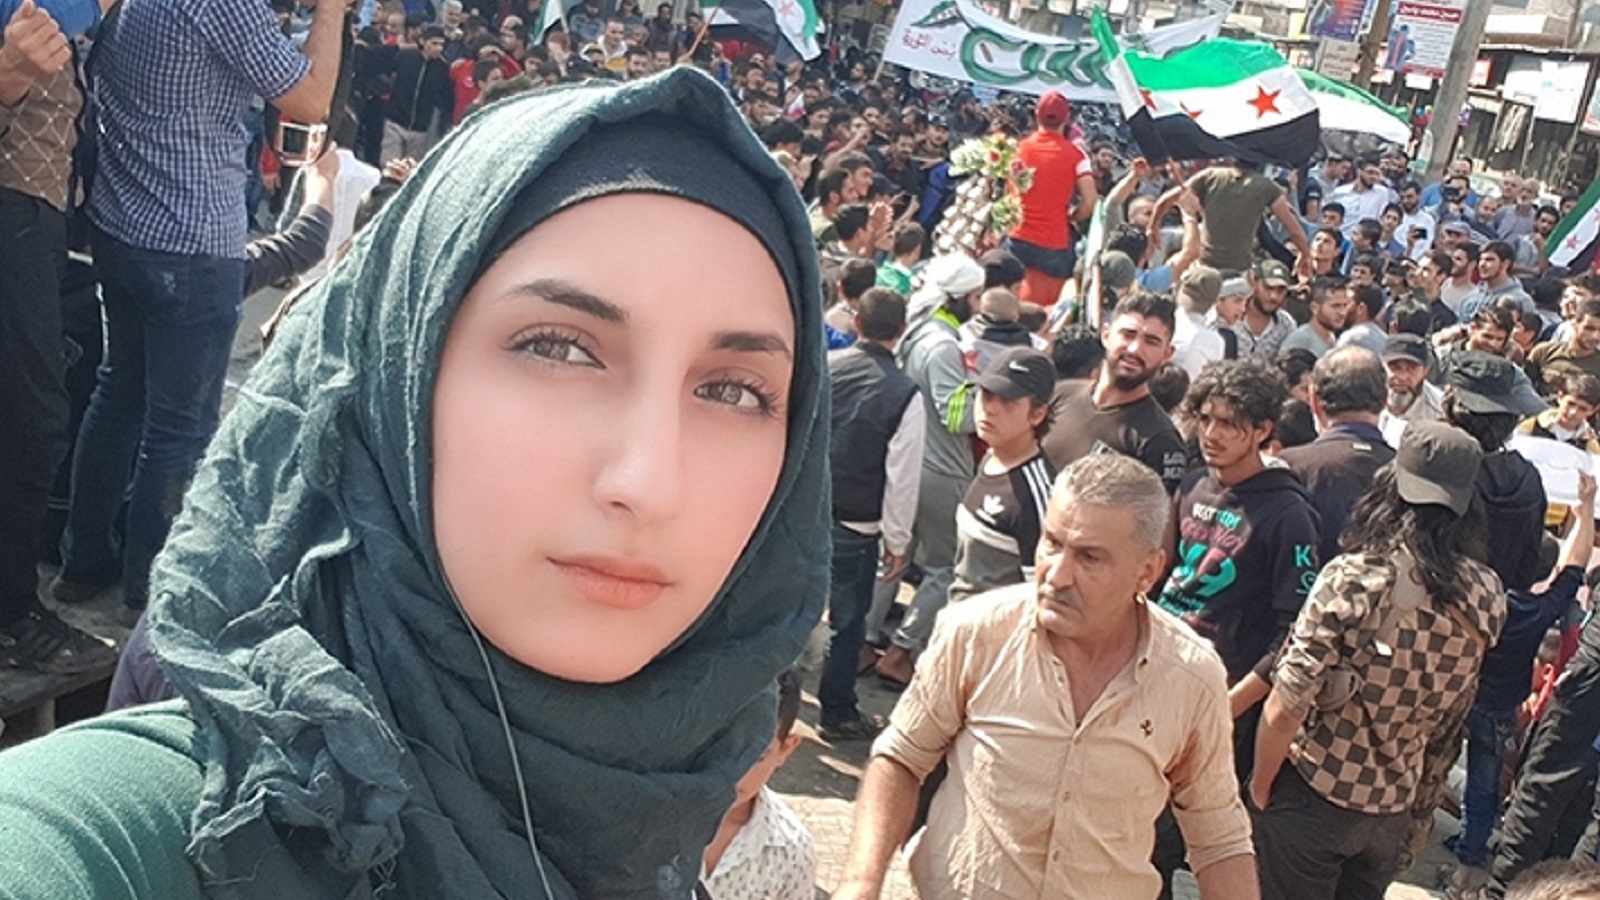 إدلب: حملة كراهية وتهديدات تستهدف الصحافية ميرنا الحسن